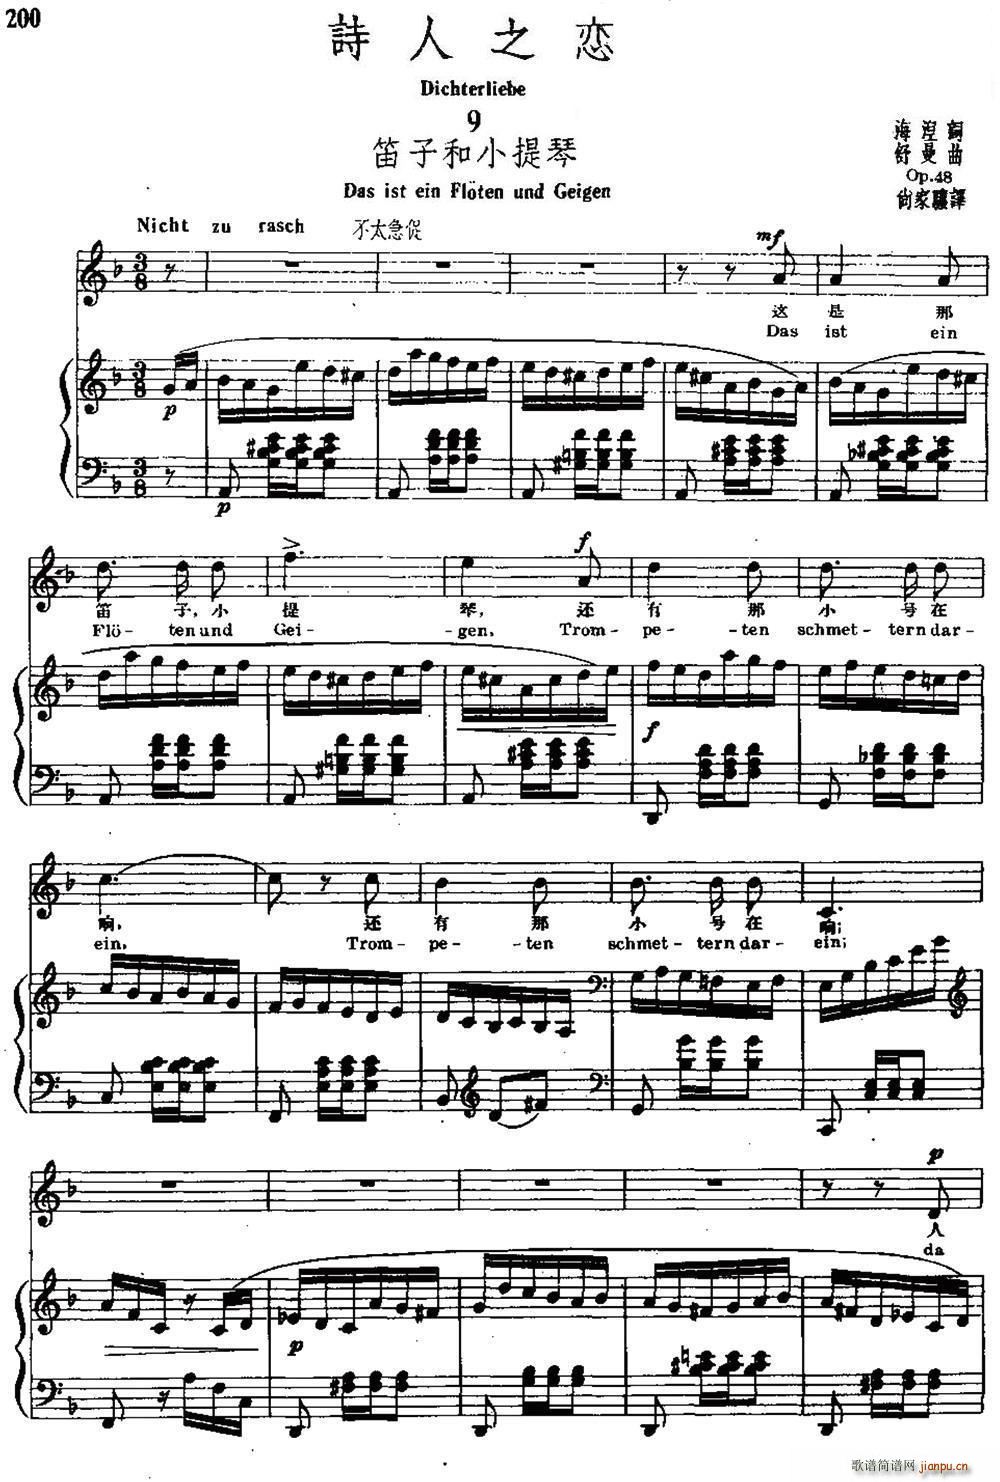 詩人之戀 9 笛子和小提琴 中外文對照(小提琴譜)1